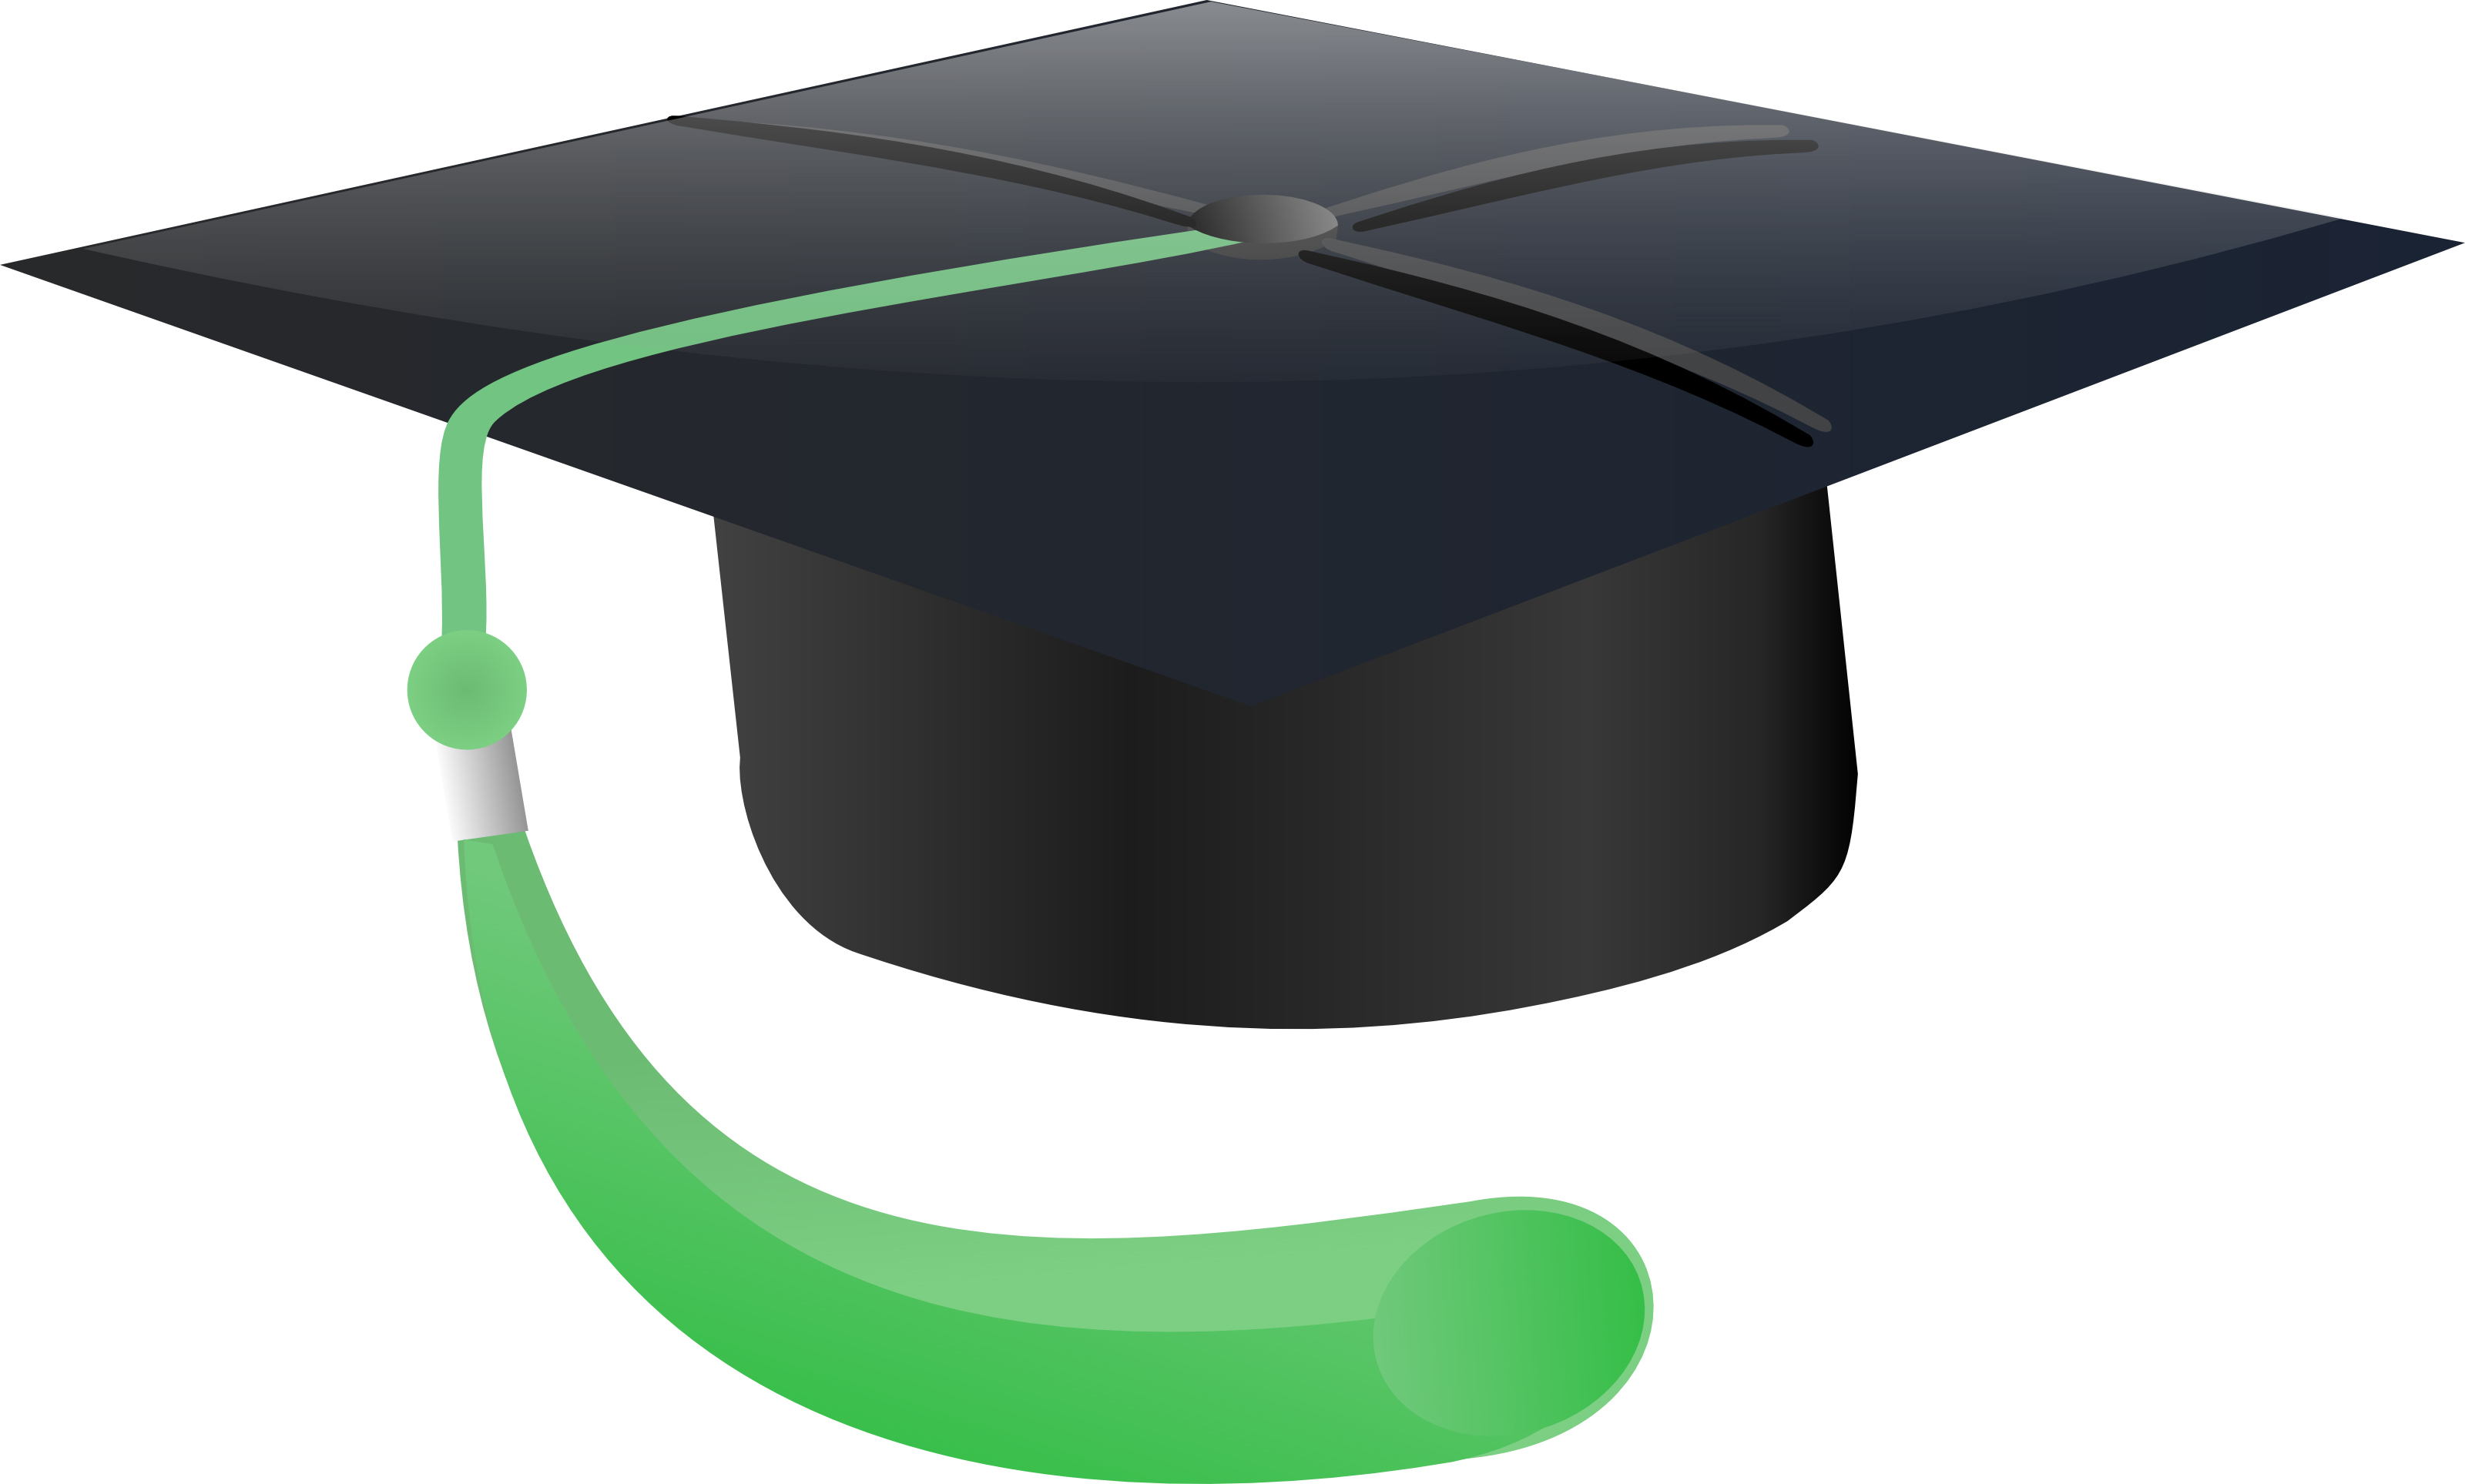 Graduation cap clipart gradua - Graduation Cap Clipart